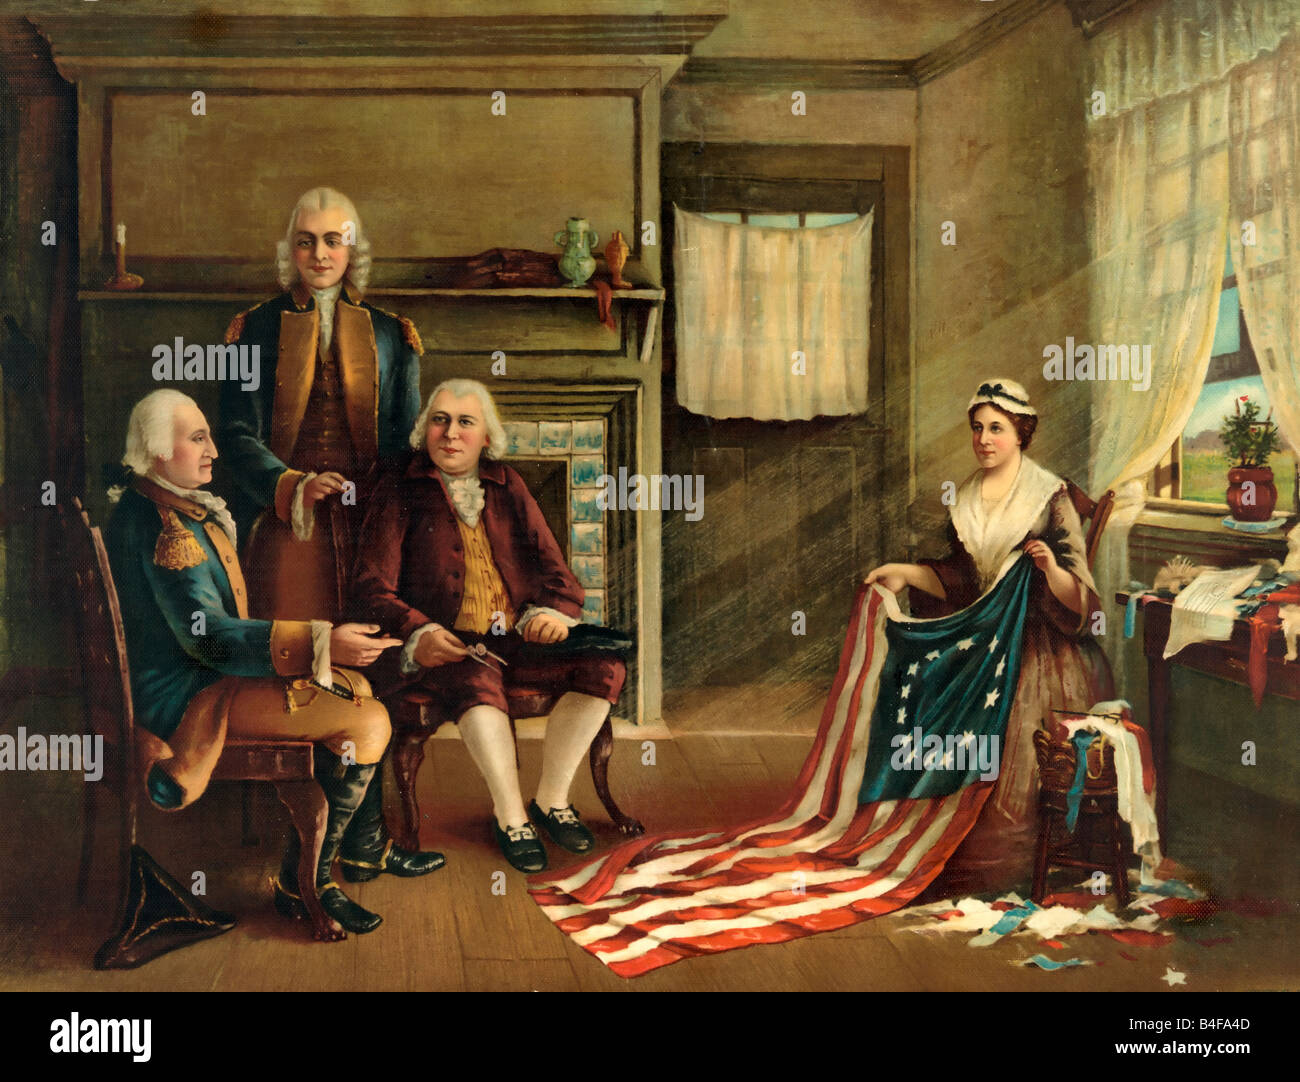 Geburt unserer Nationen Flagge - Betsy Ross macht die erste amerikanische Flagge Stockfoto